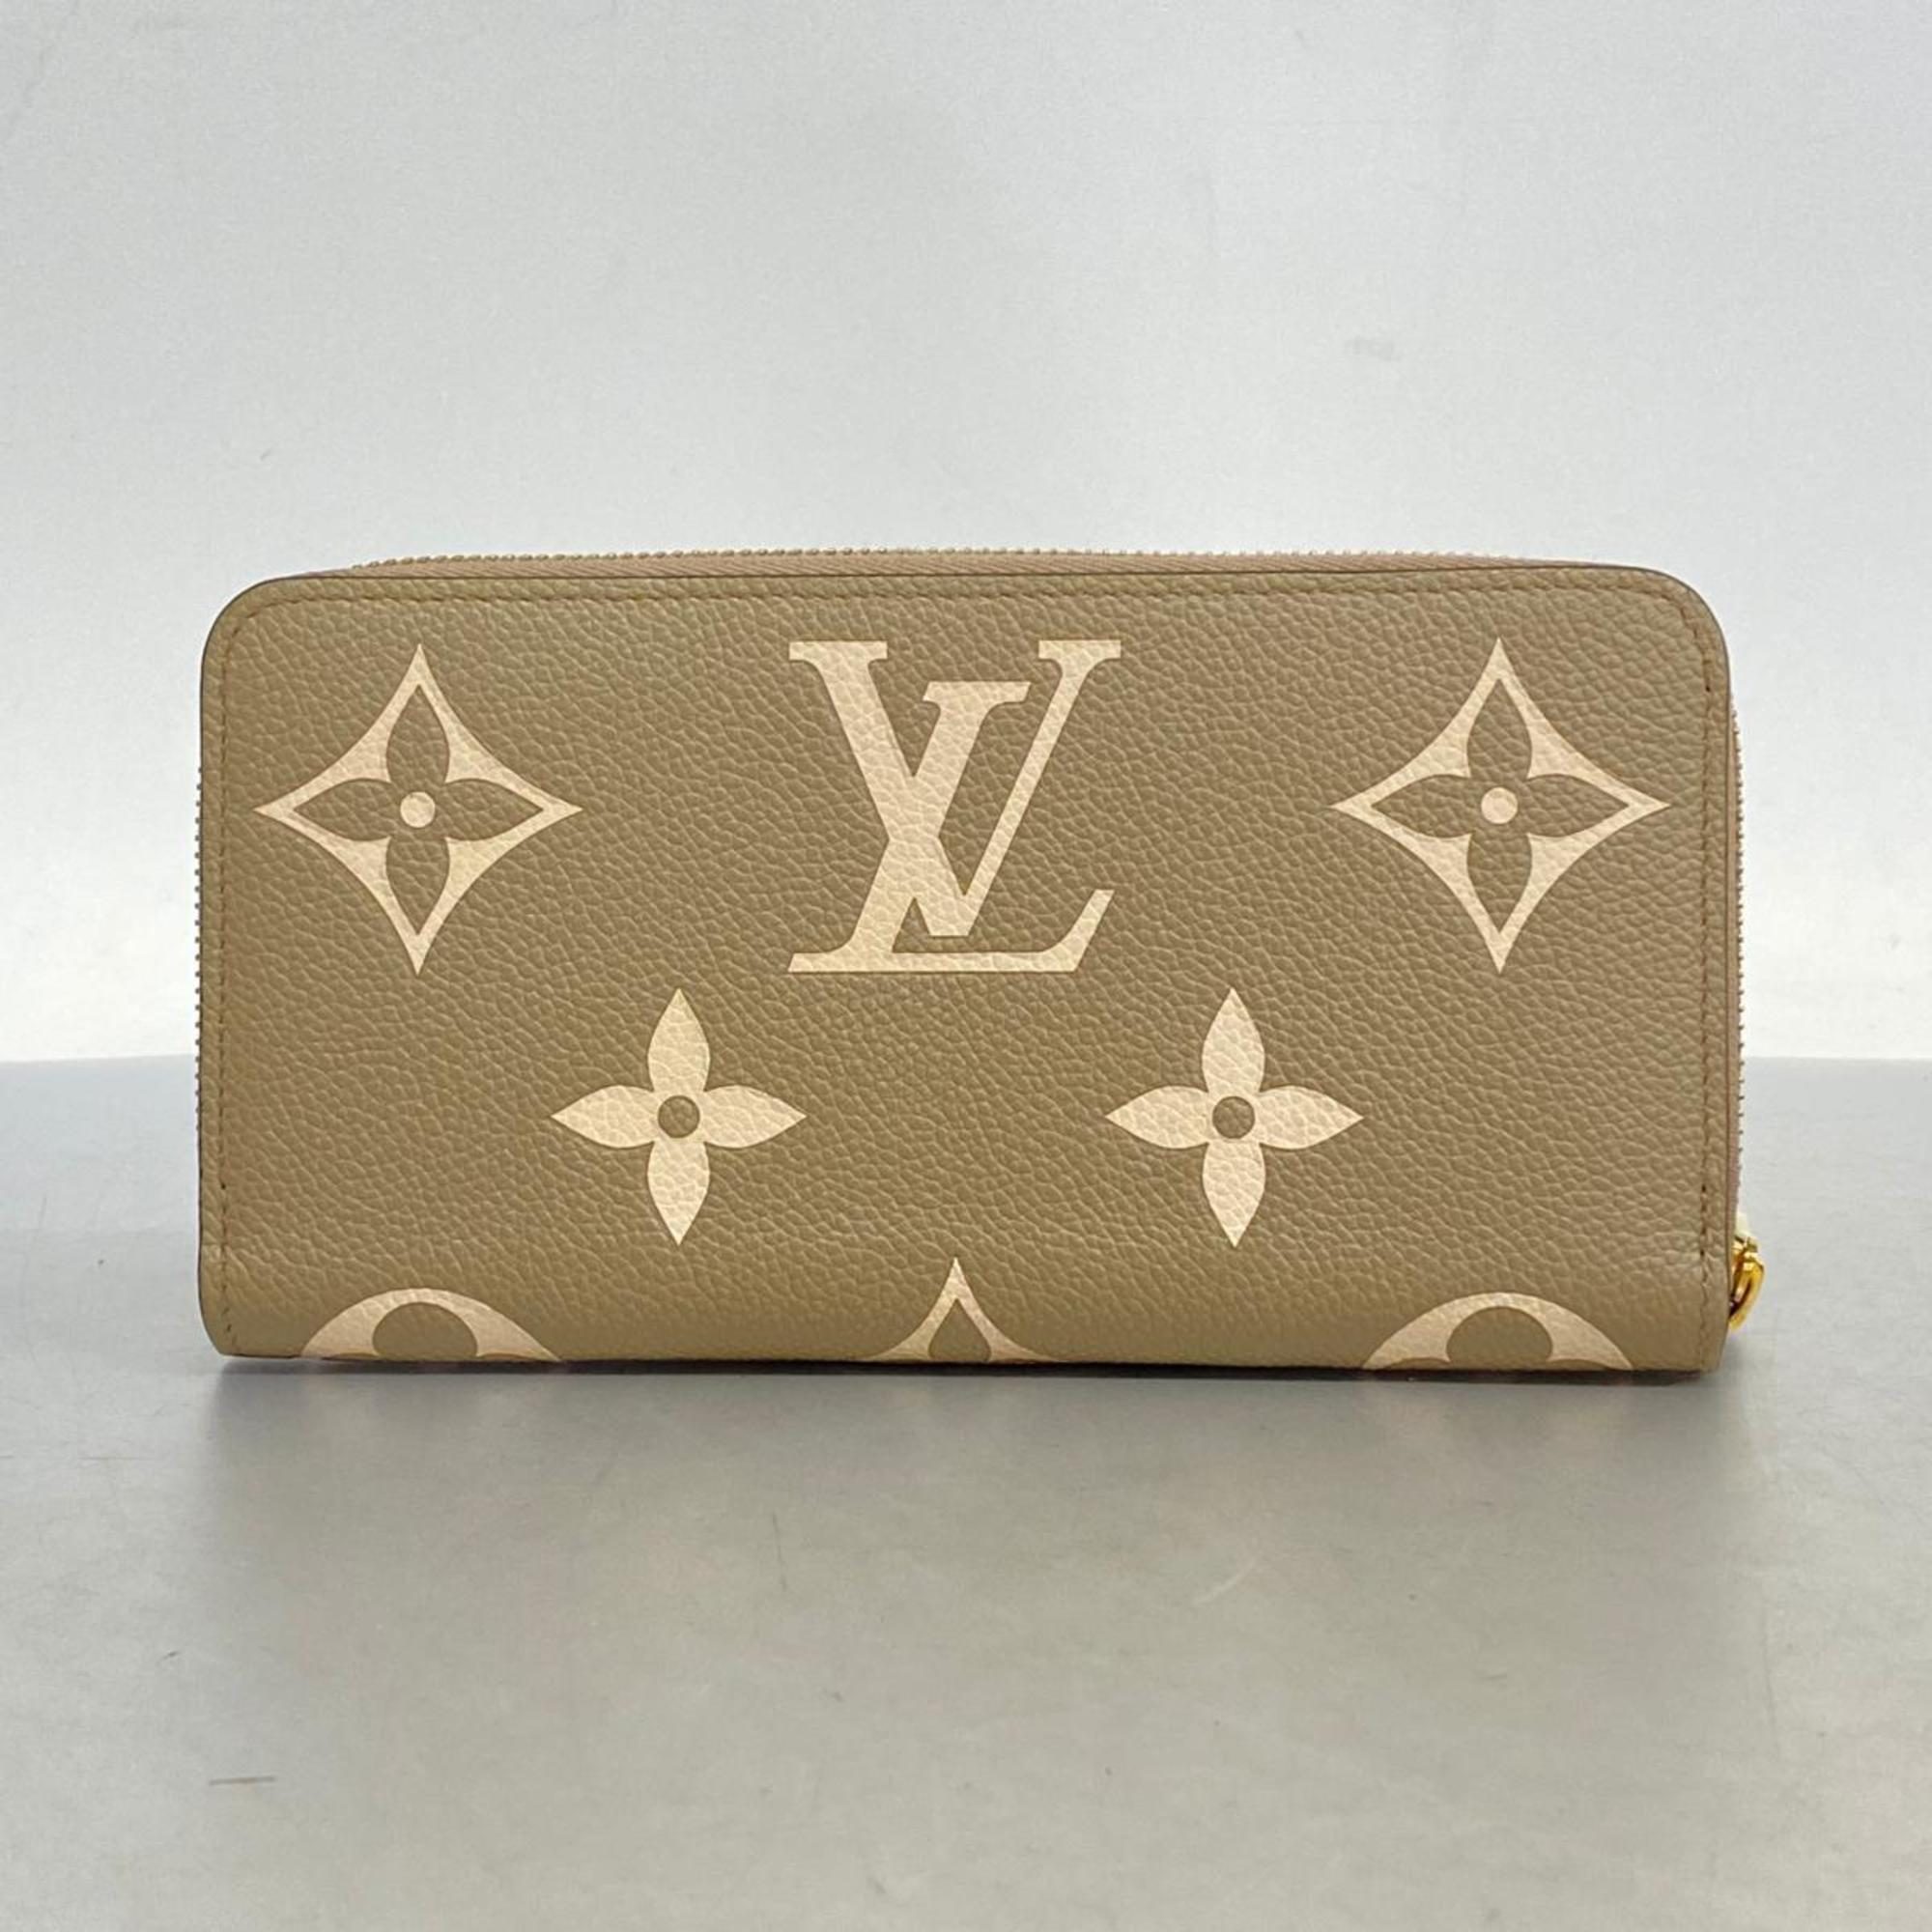 ルイ・ヴィトン(Louis Vuitton) ルイ・ヴィトン 長財布 モノグラム・アンプラント ジッピーウォレット M69794 トゥルトレールクレームメンズ レディース